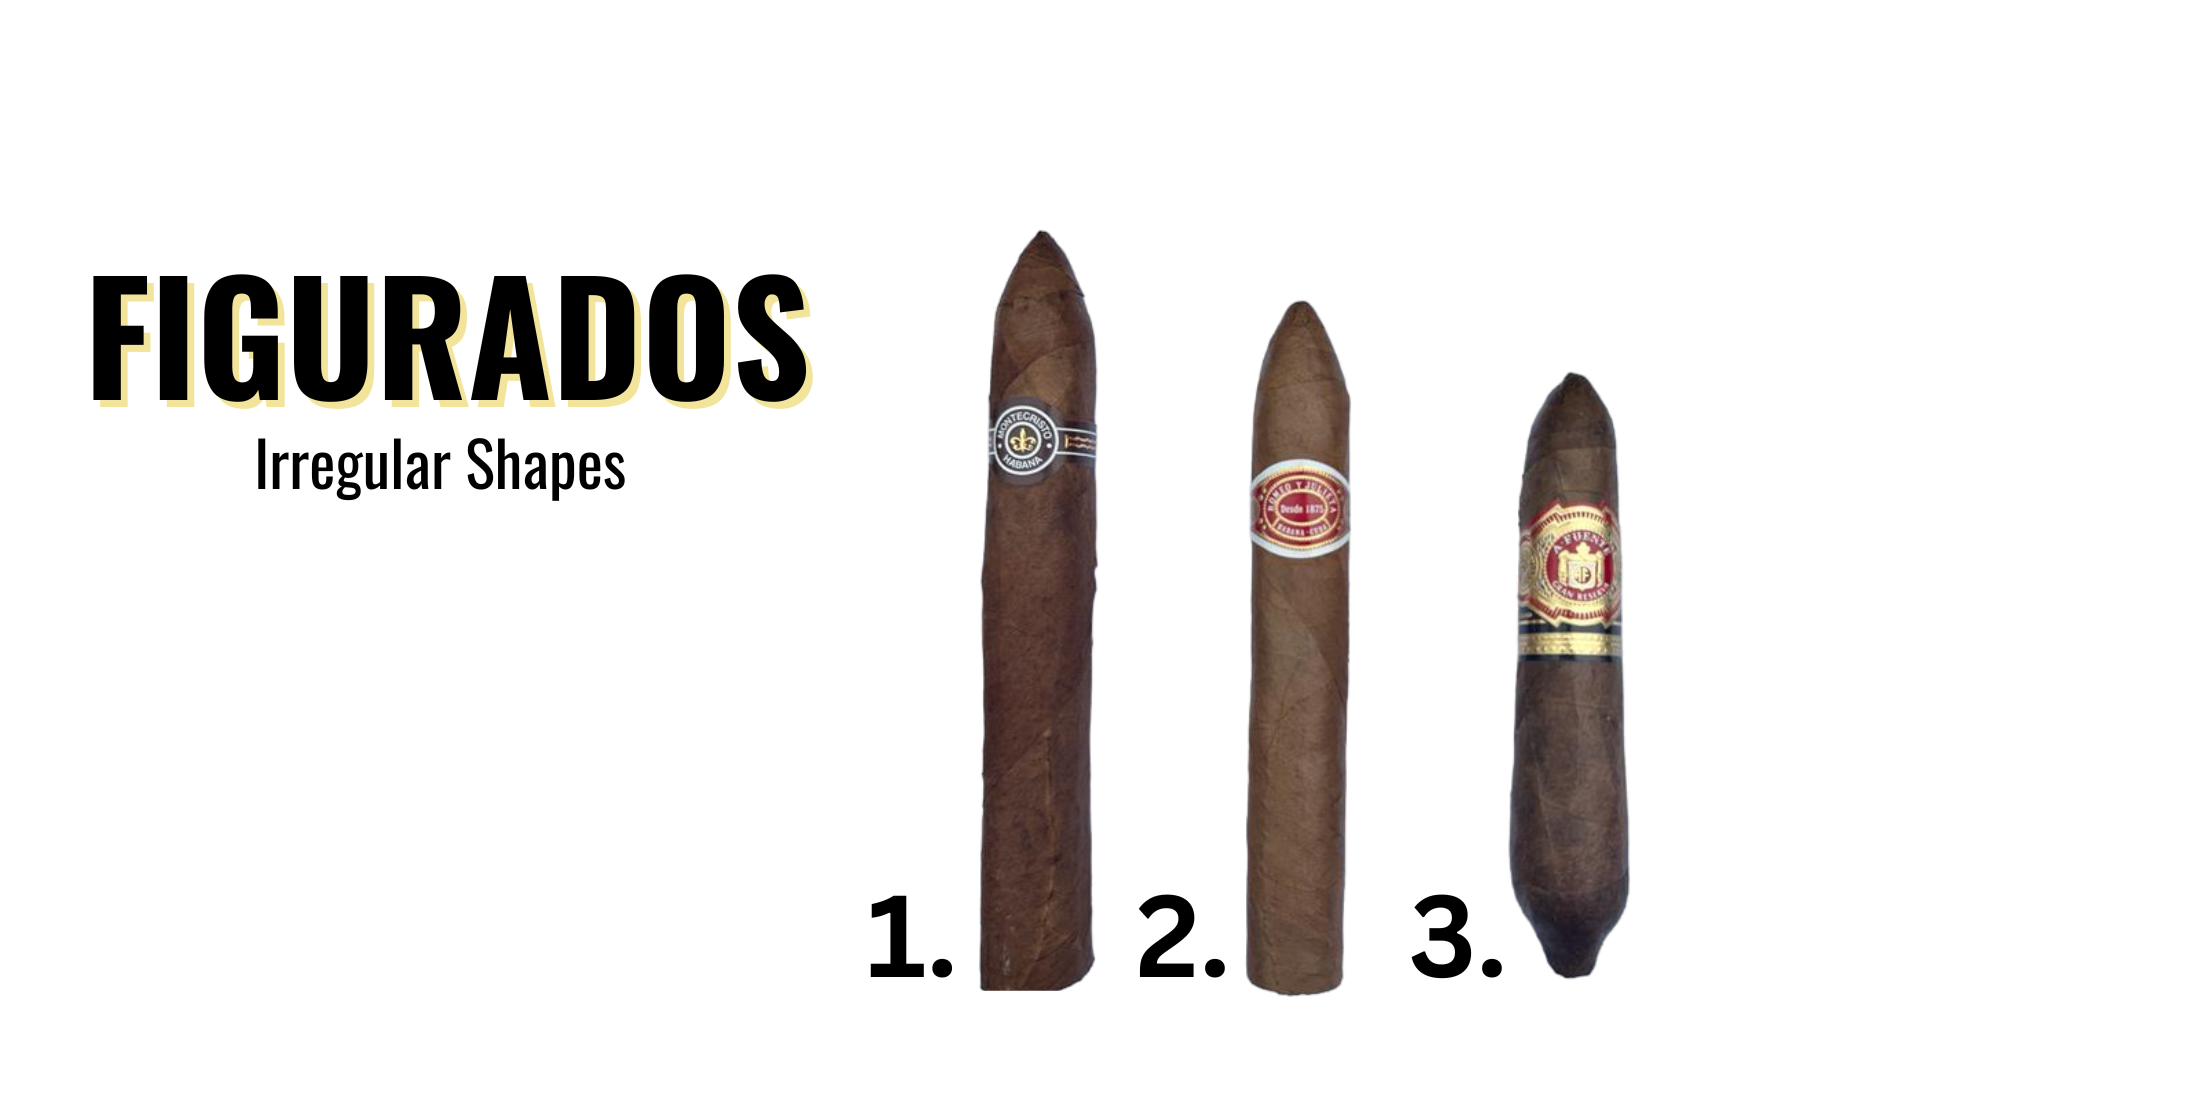 figurados cigar shapes